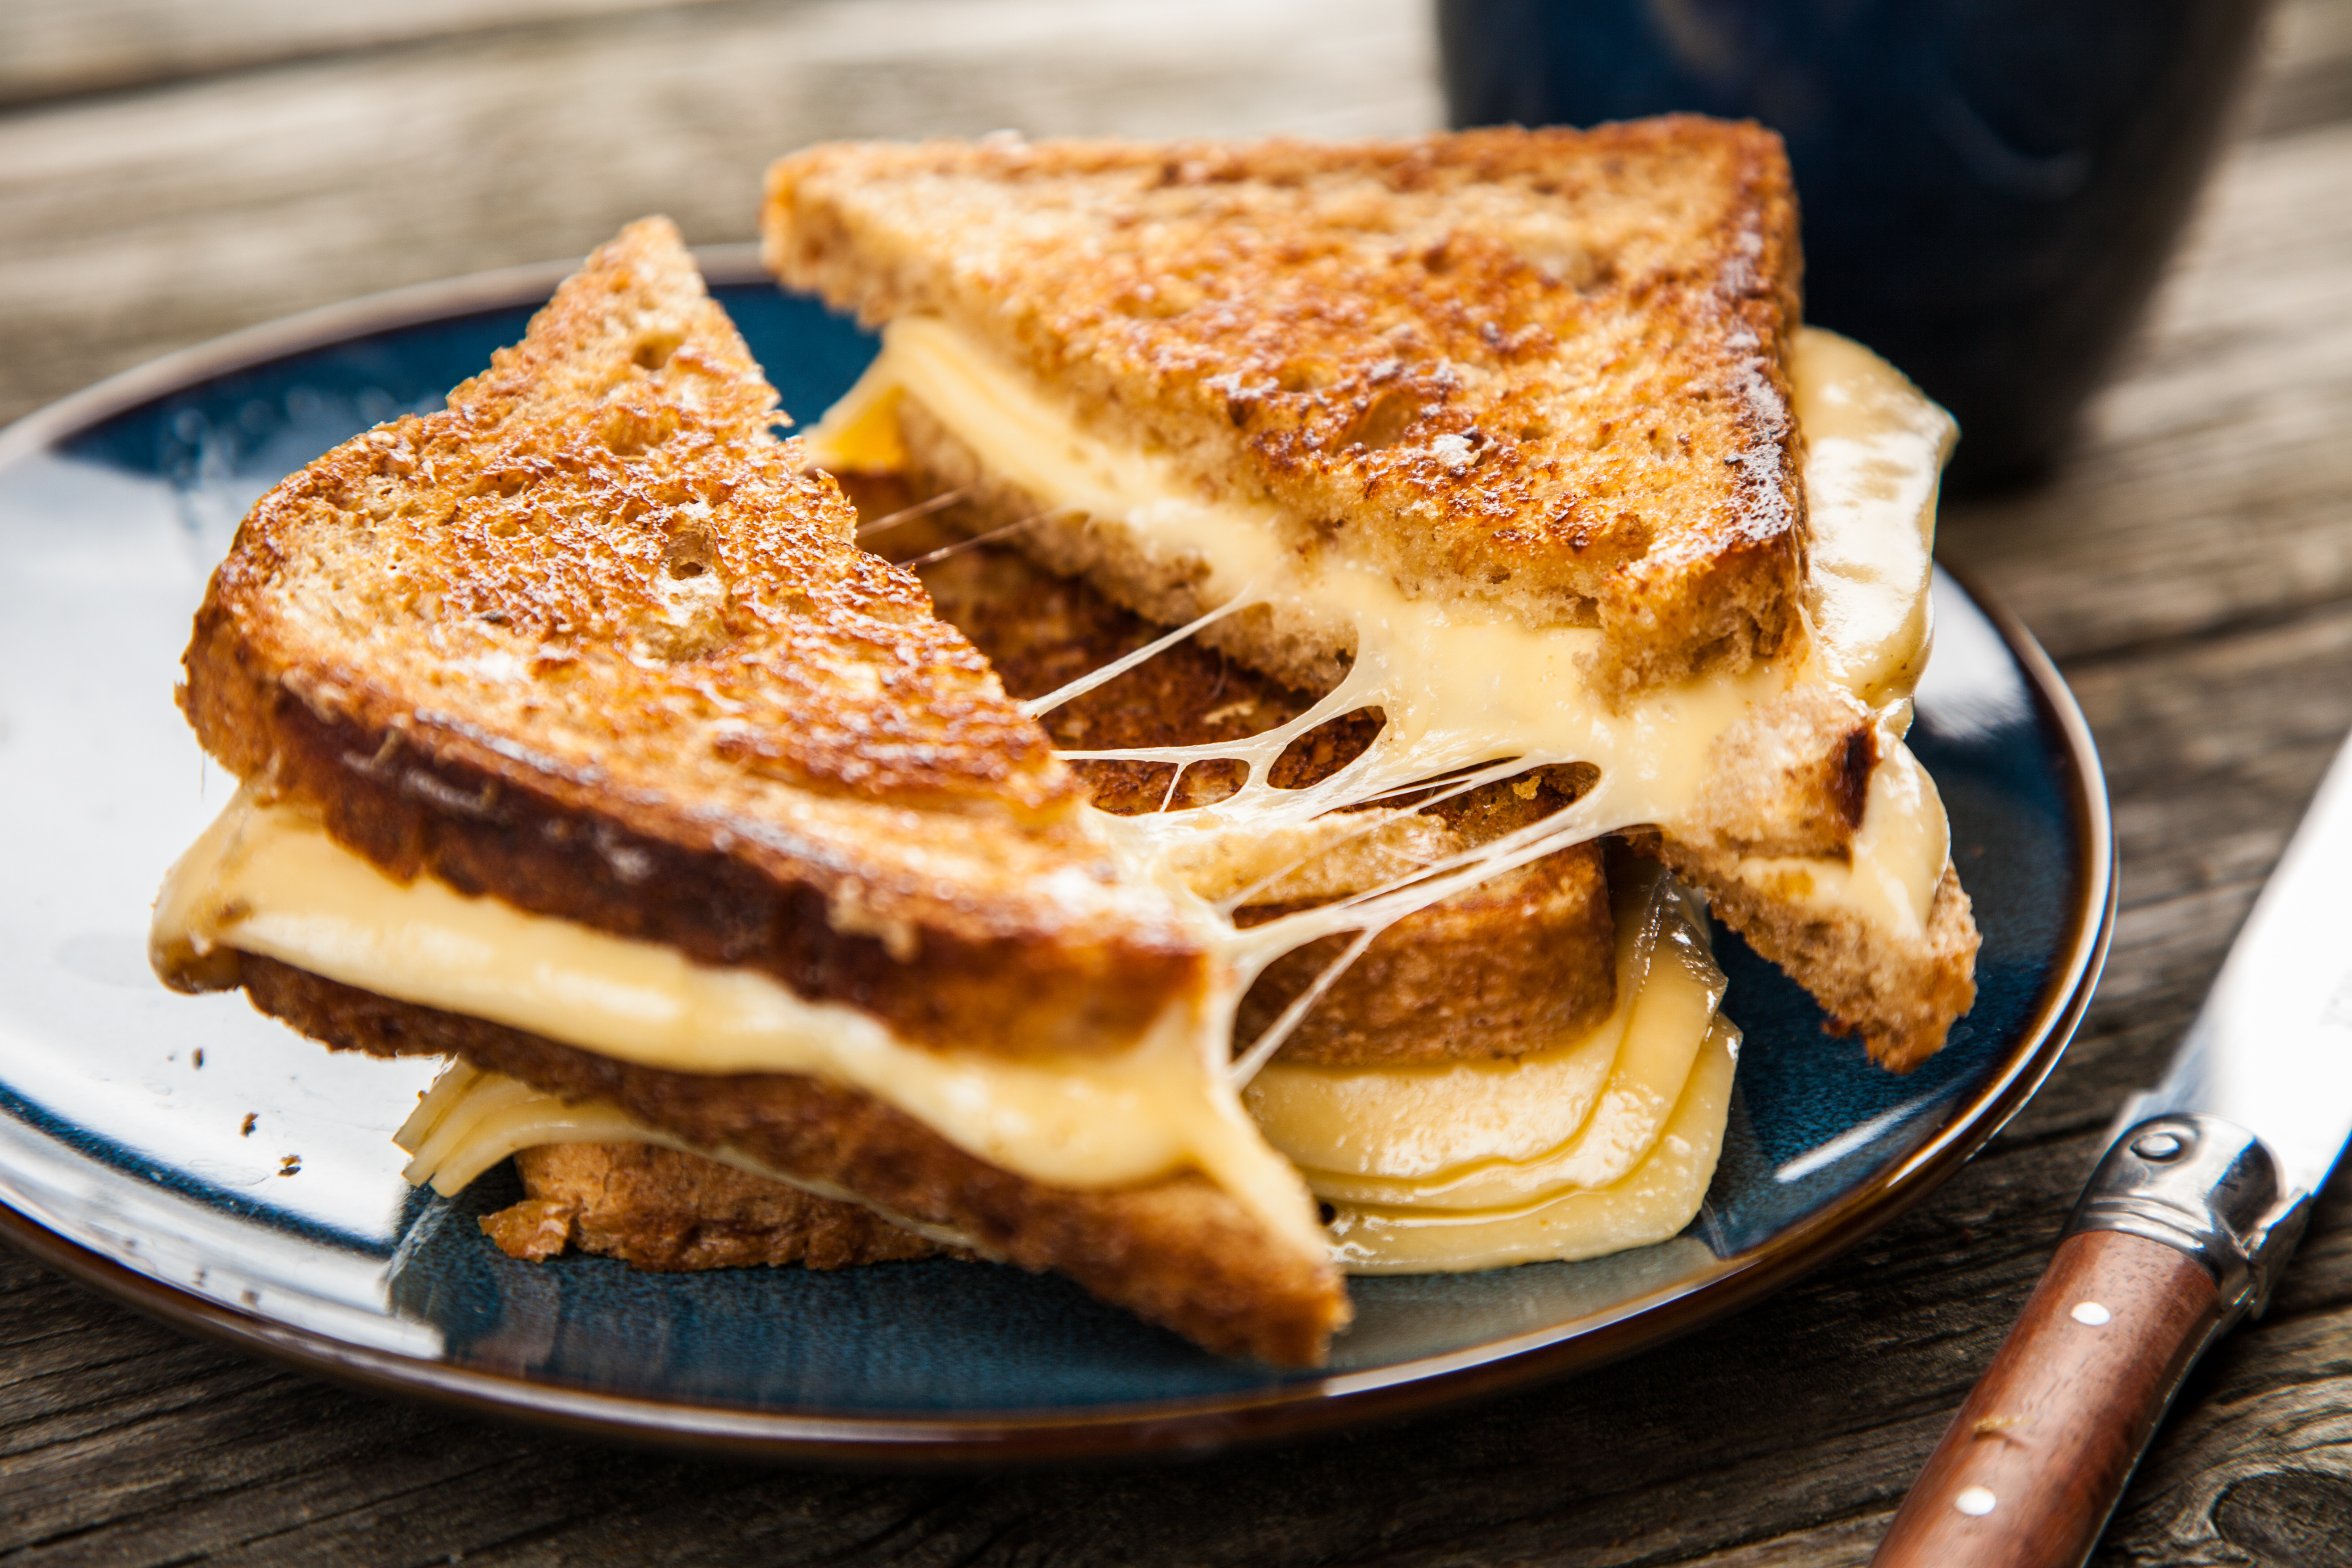 Un sandwich au fromage grillé | Source : Shutterstock